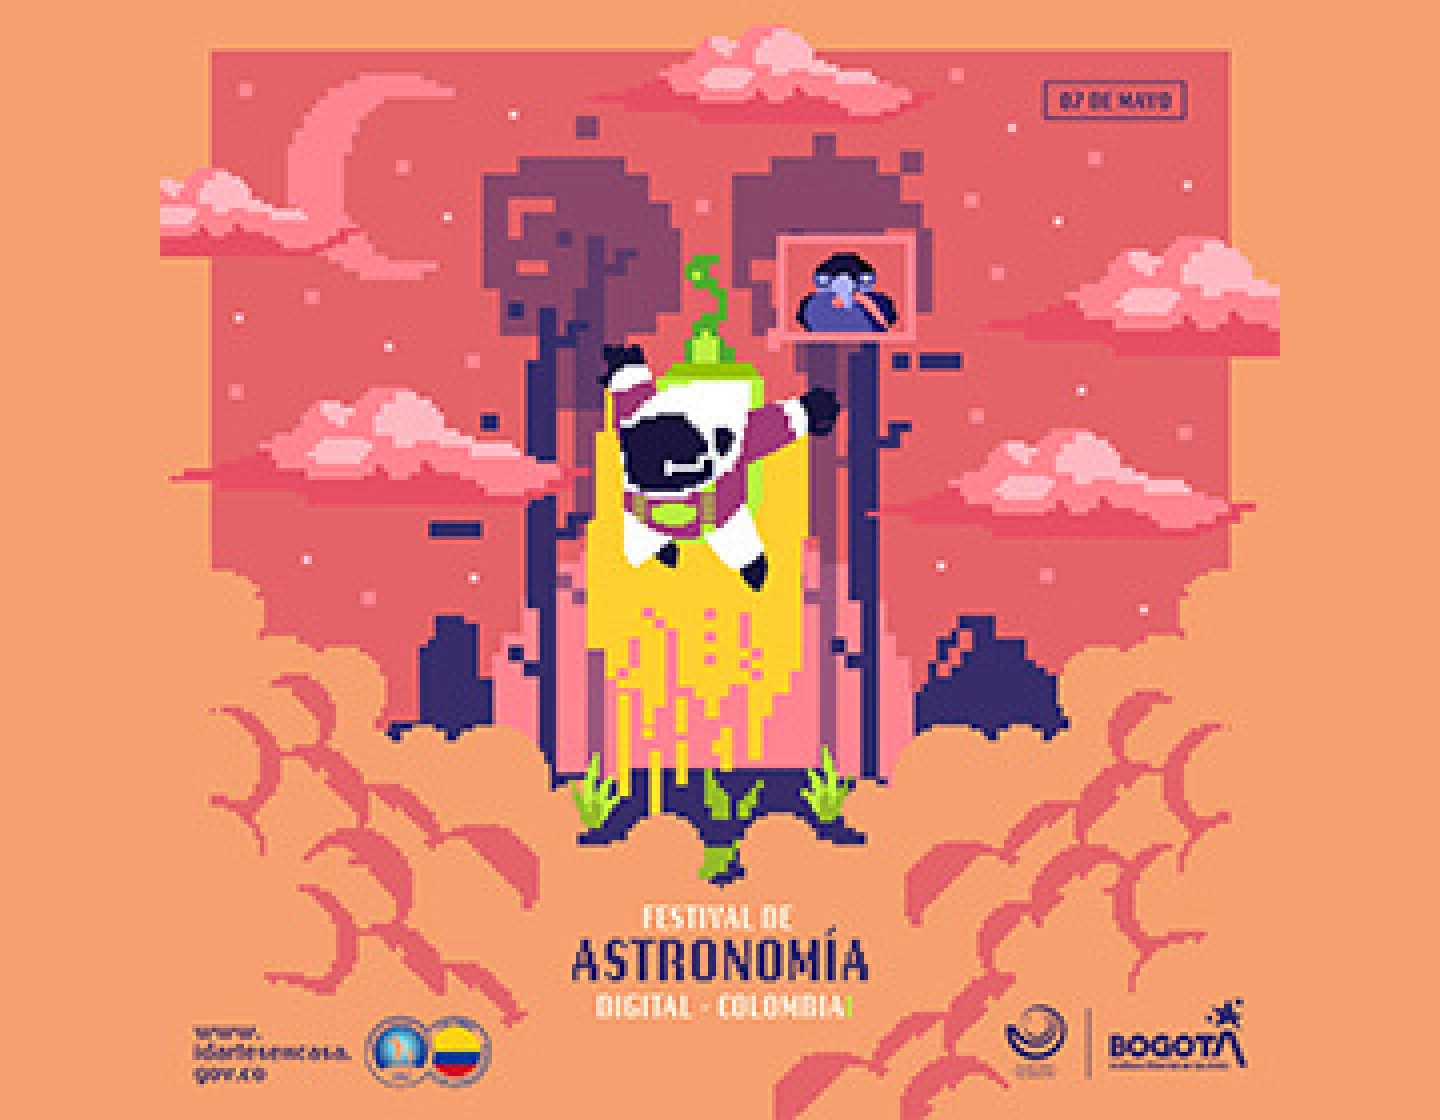 Festival de Astronomía Digital Colombia